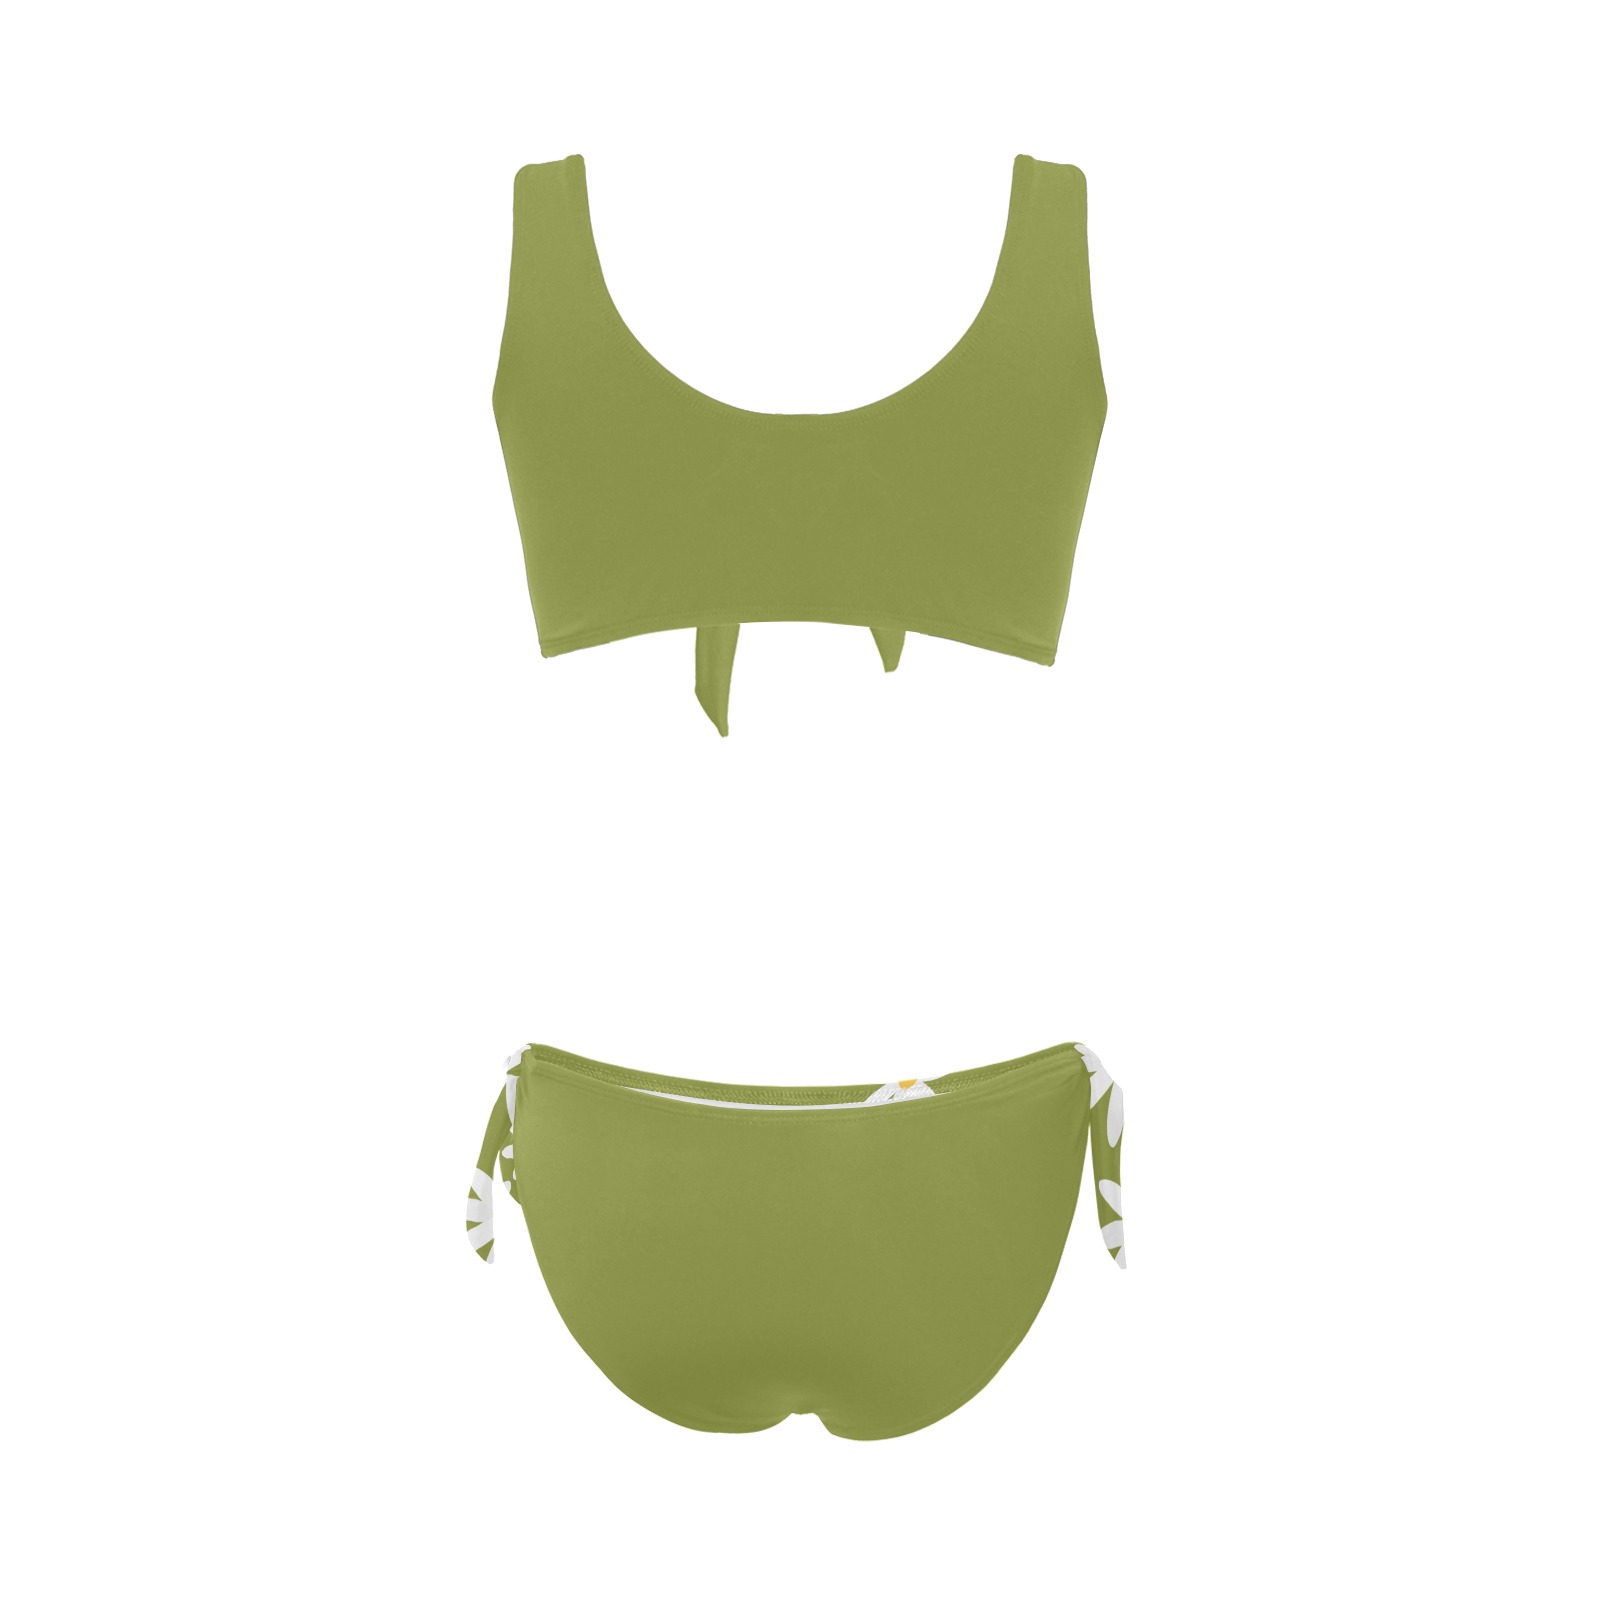 Daisy Woman's Swimwear Green Bow Tie Front Bikini Swimsuit (Model S38)